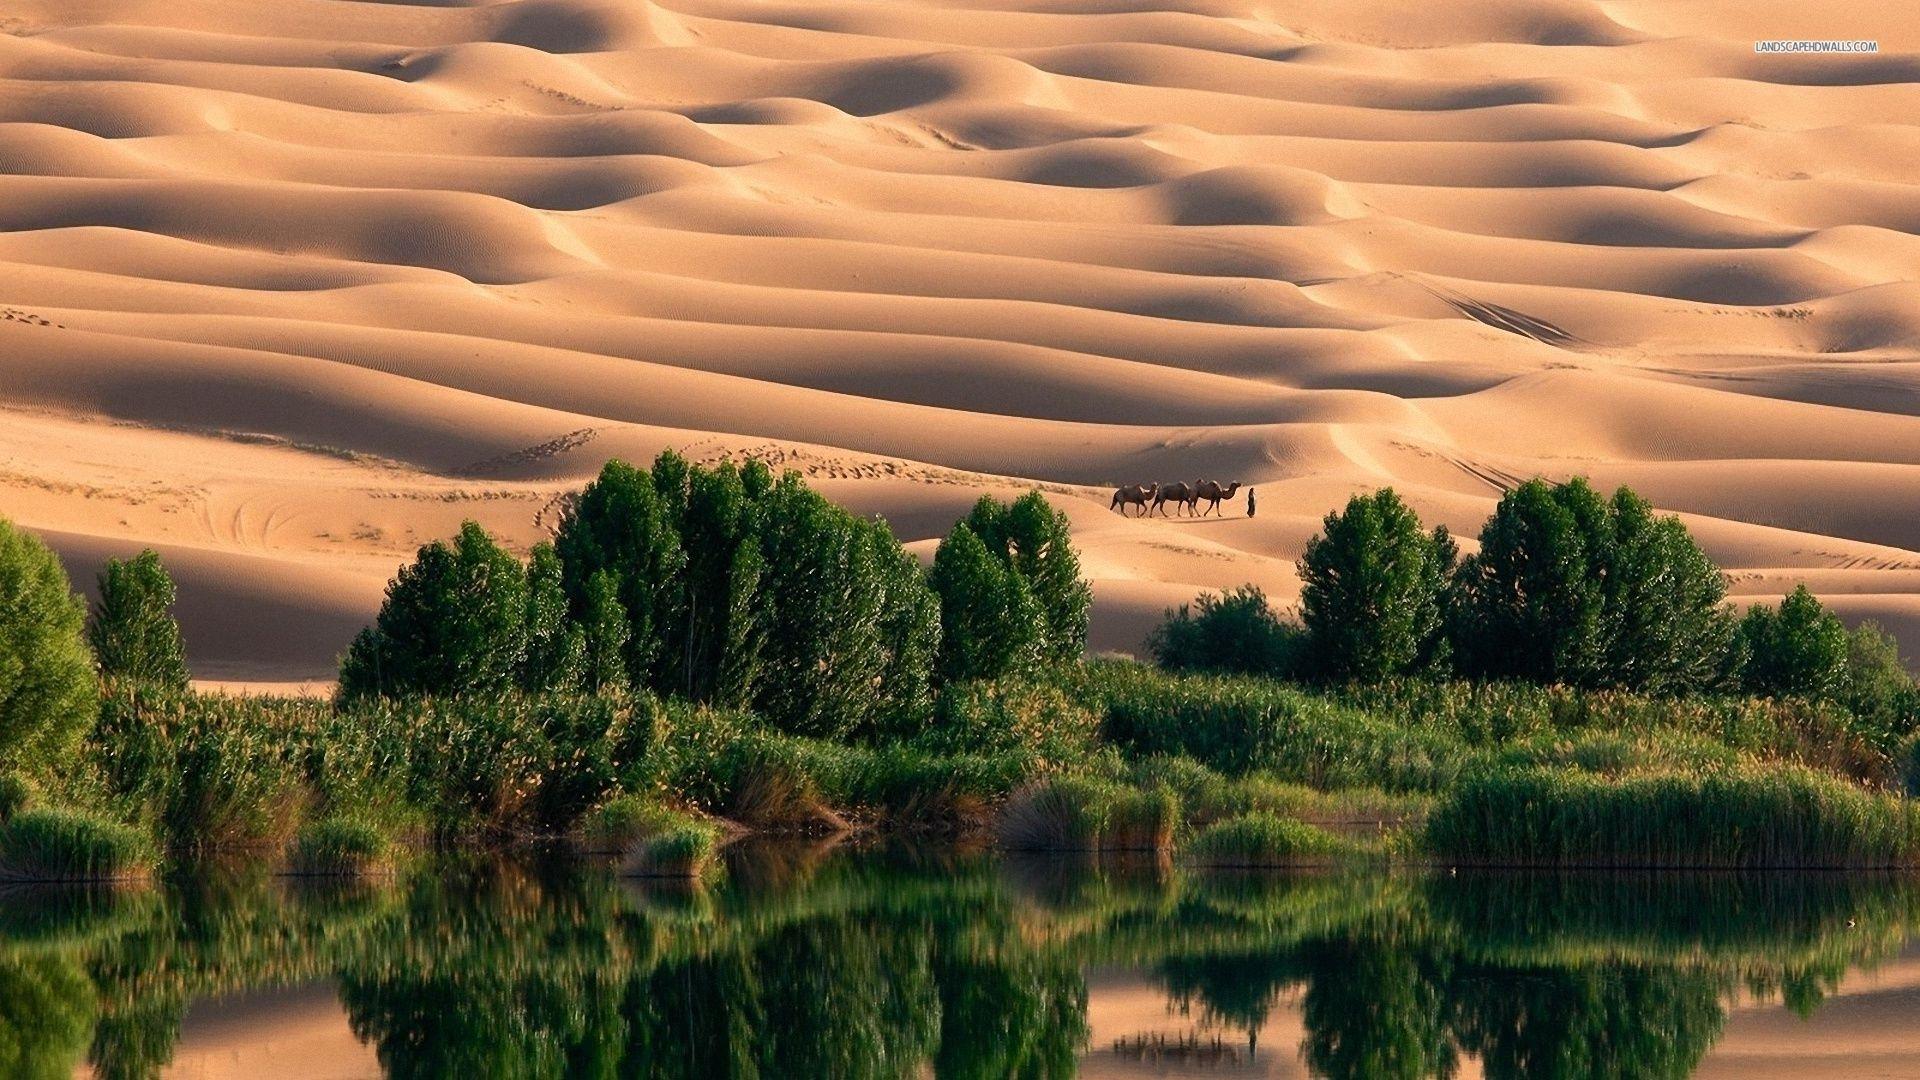 Desert Oasis Wallpaper 185232 1920x1080 (428.16 KB)